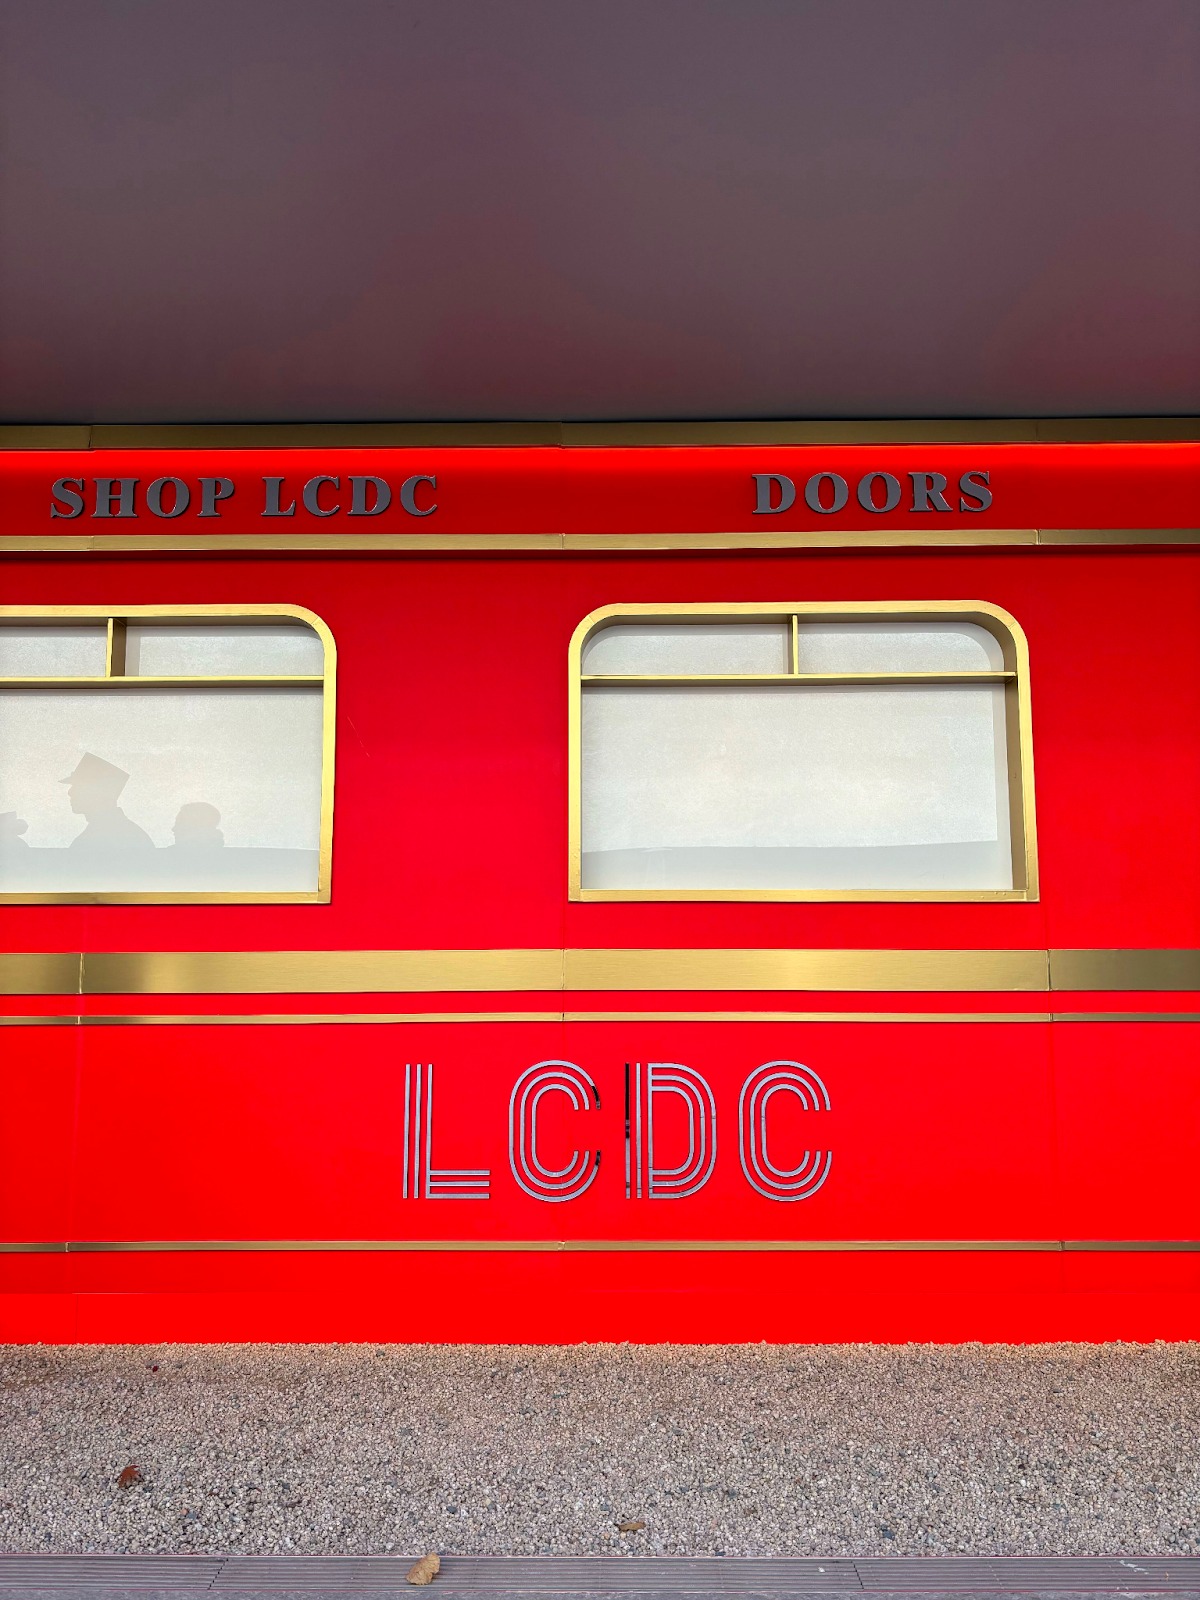 기차를 형상화한 LCDC 팝업스토어 장소